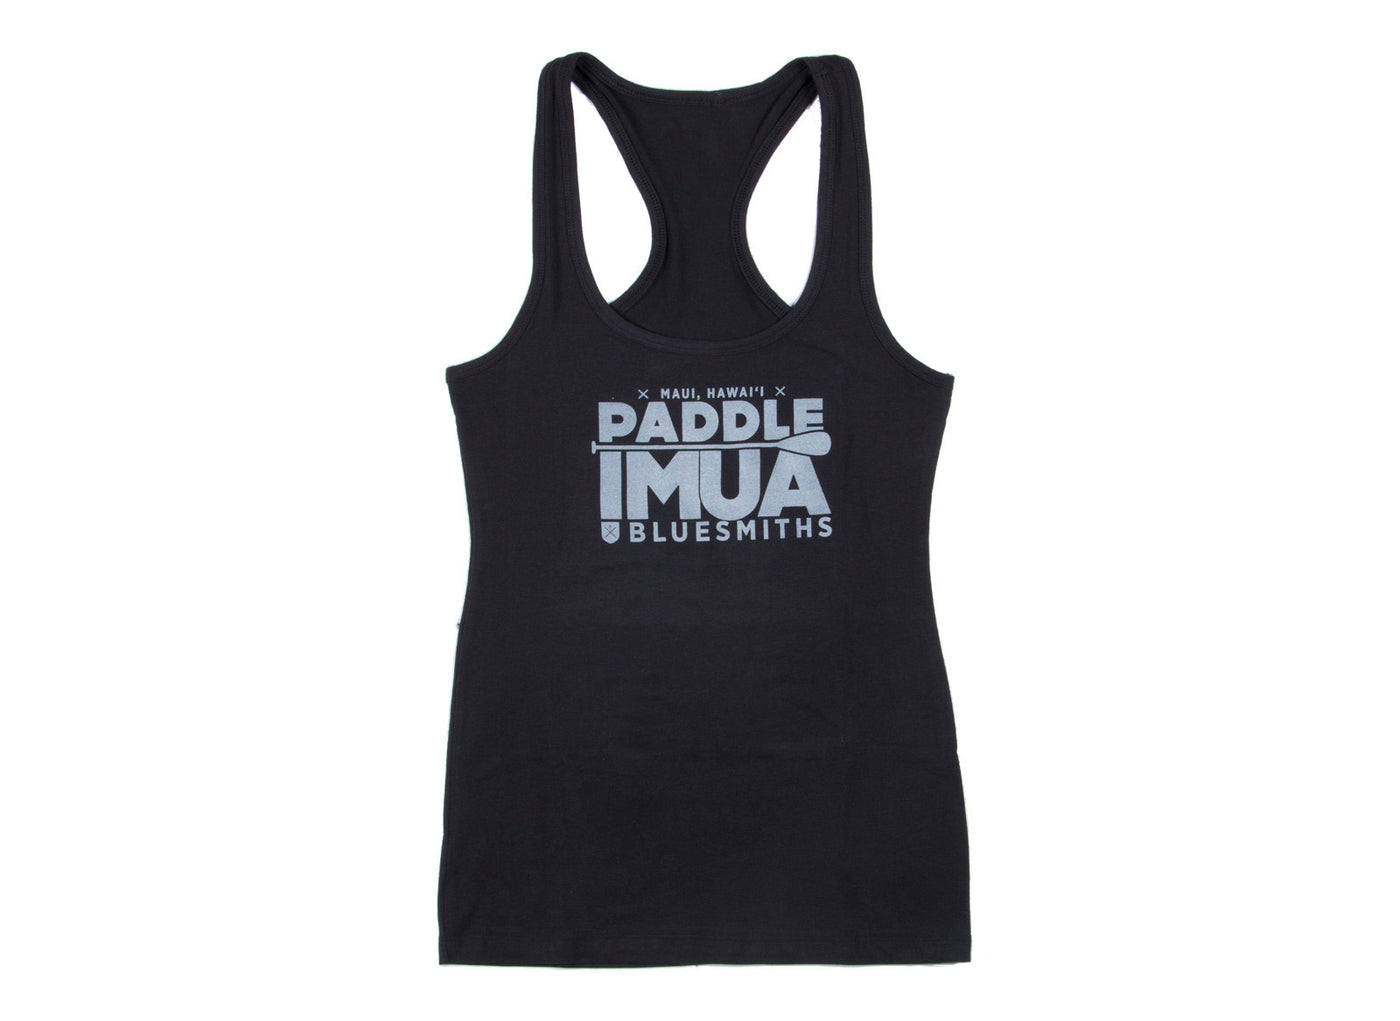  BLUESMITHS Paddle Imua Women's Tank Tee Shirt in Black - The World's Finest Waterwear | BLUESMITHS